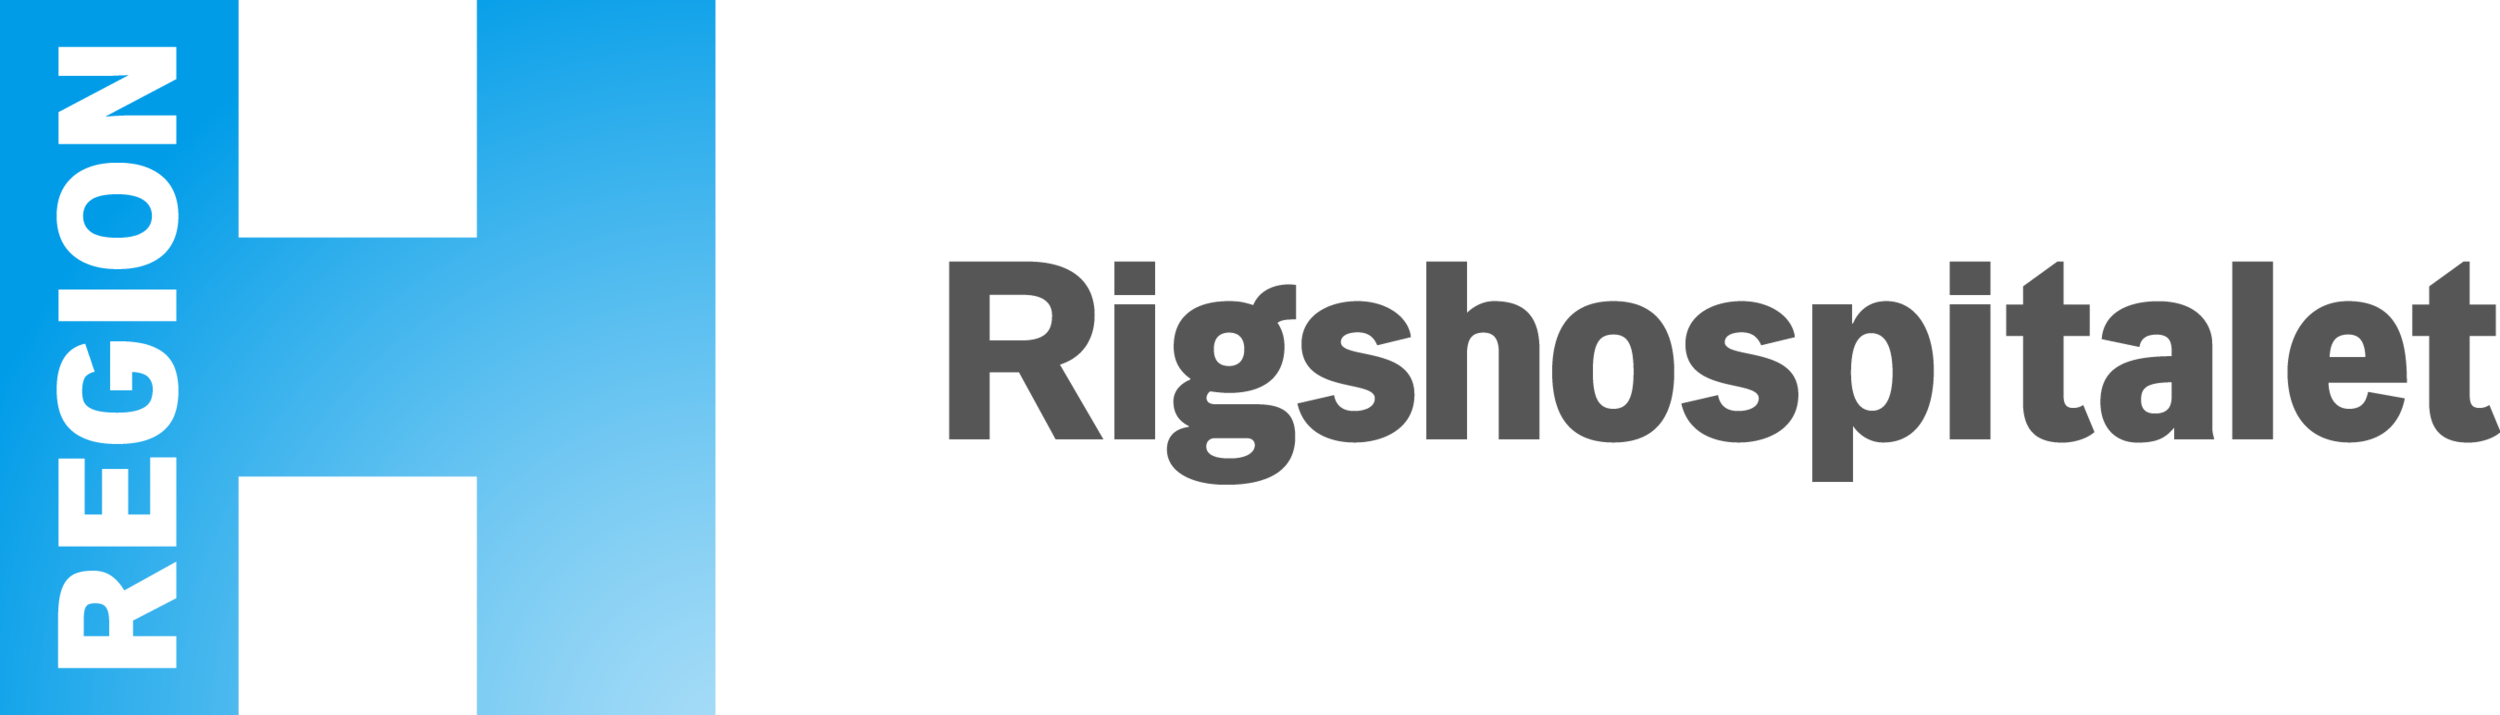 Logo_Rigshospitalet.png